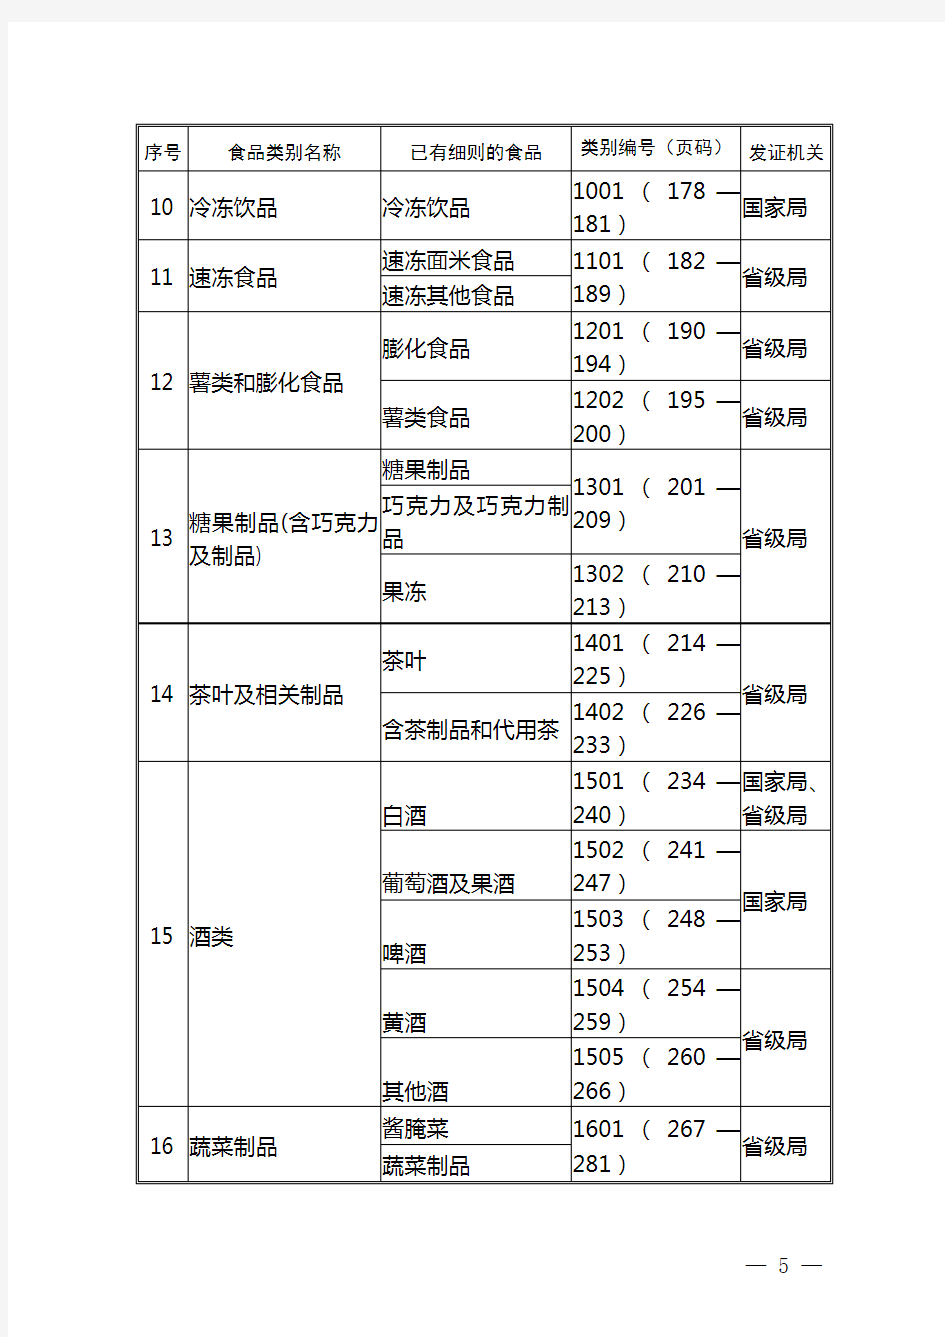 中华人民共和国28类食品生产许可证审查细则